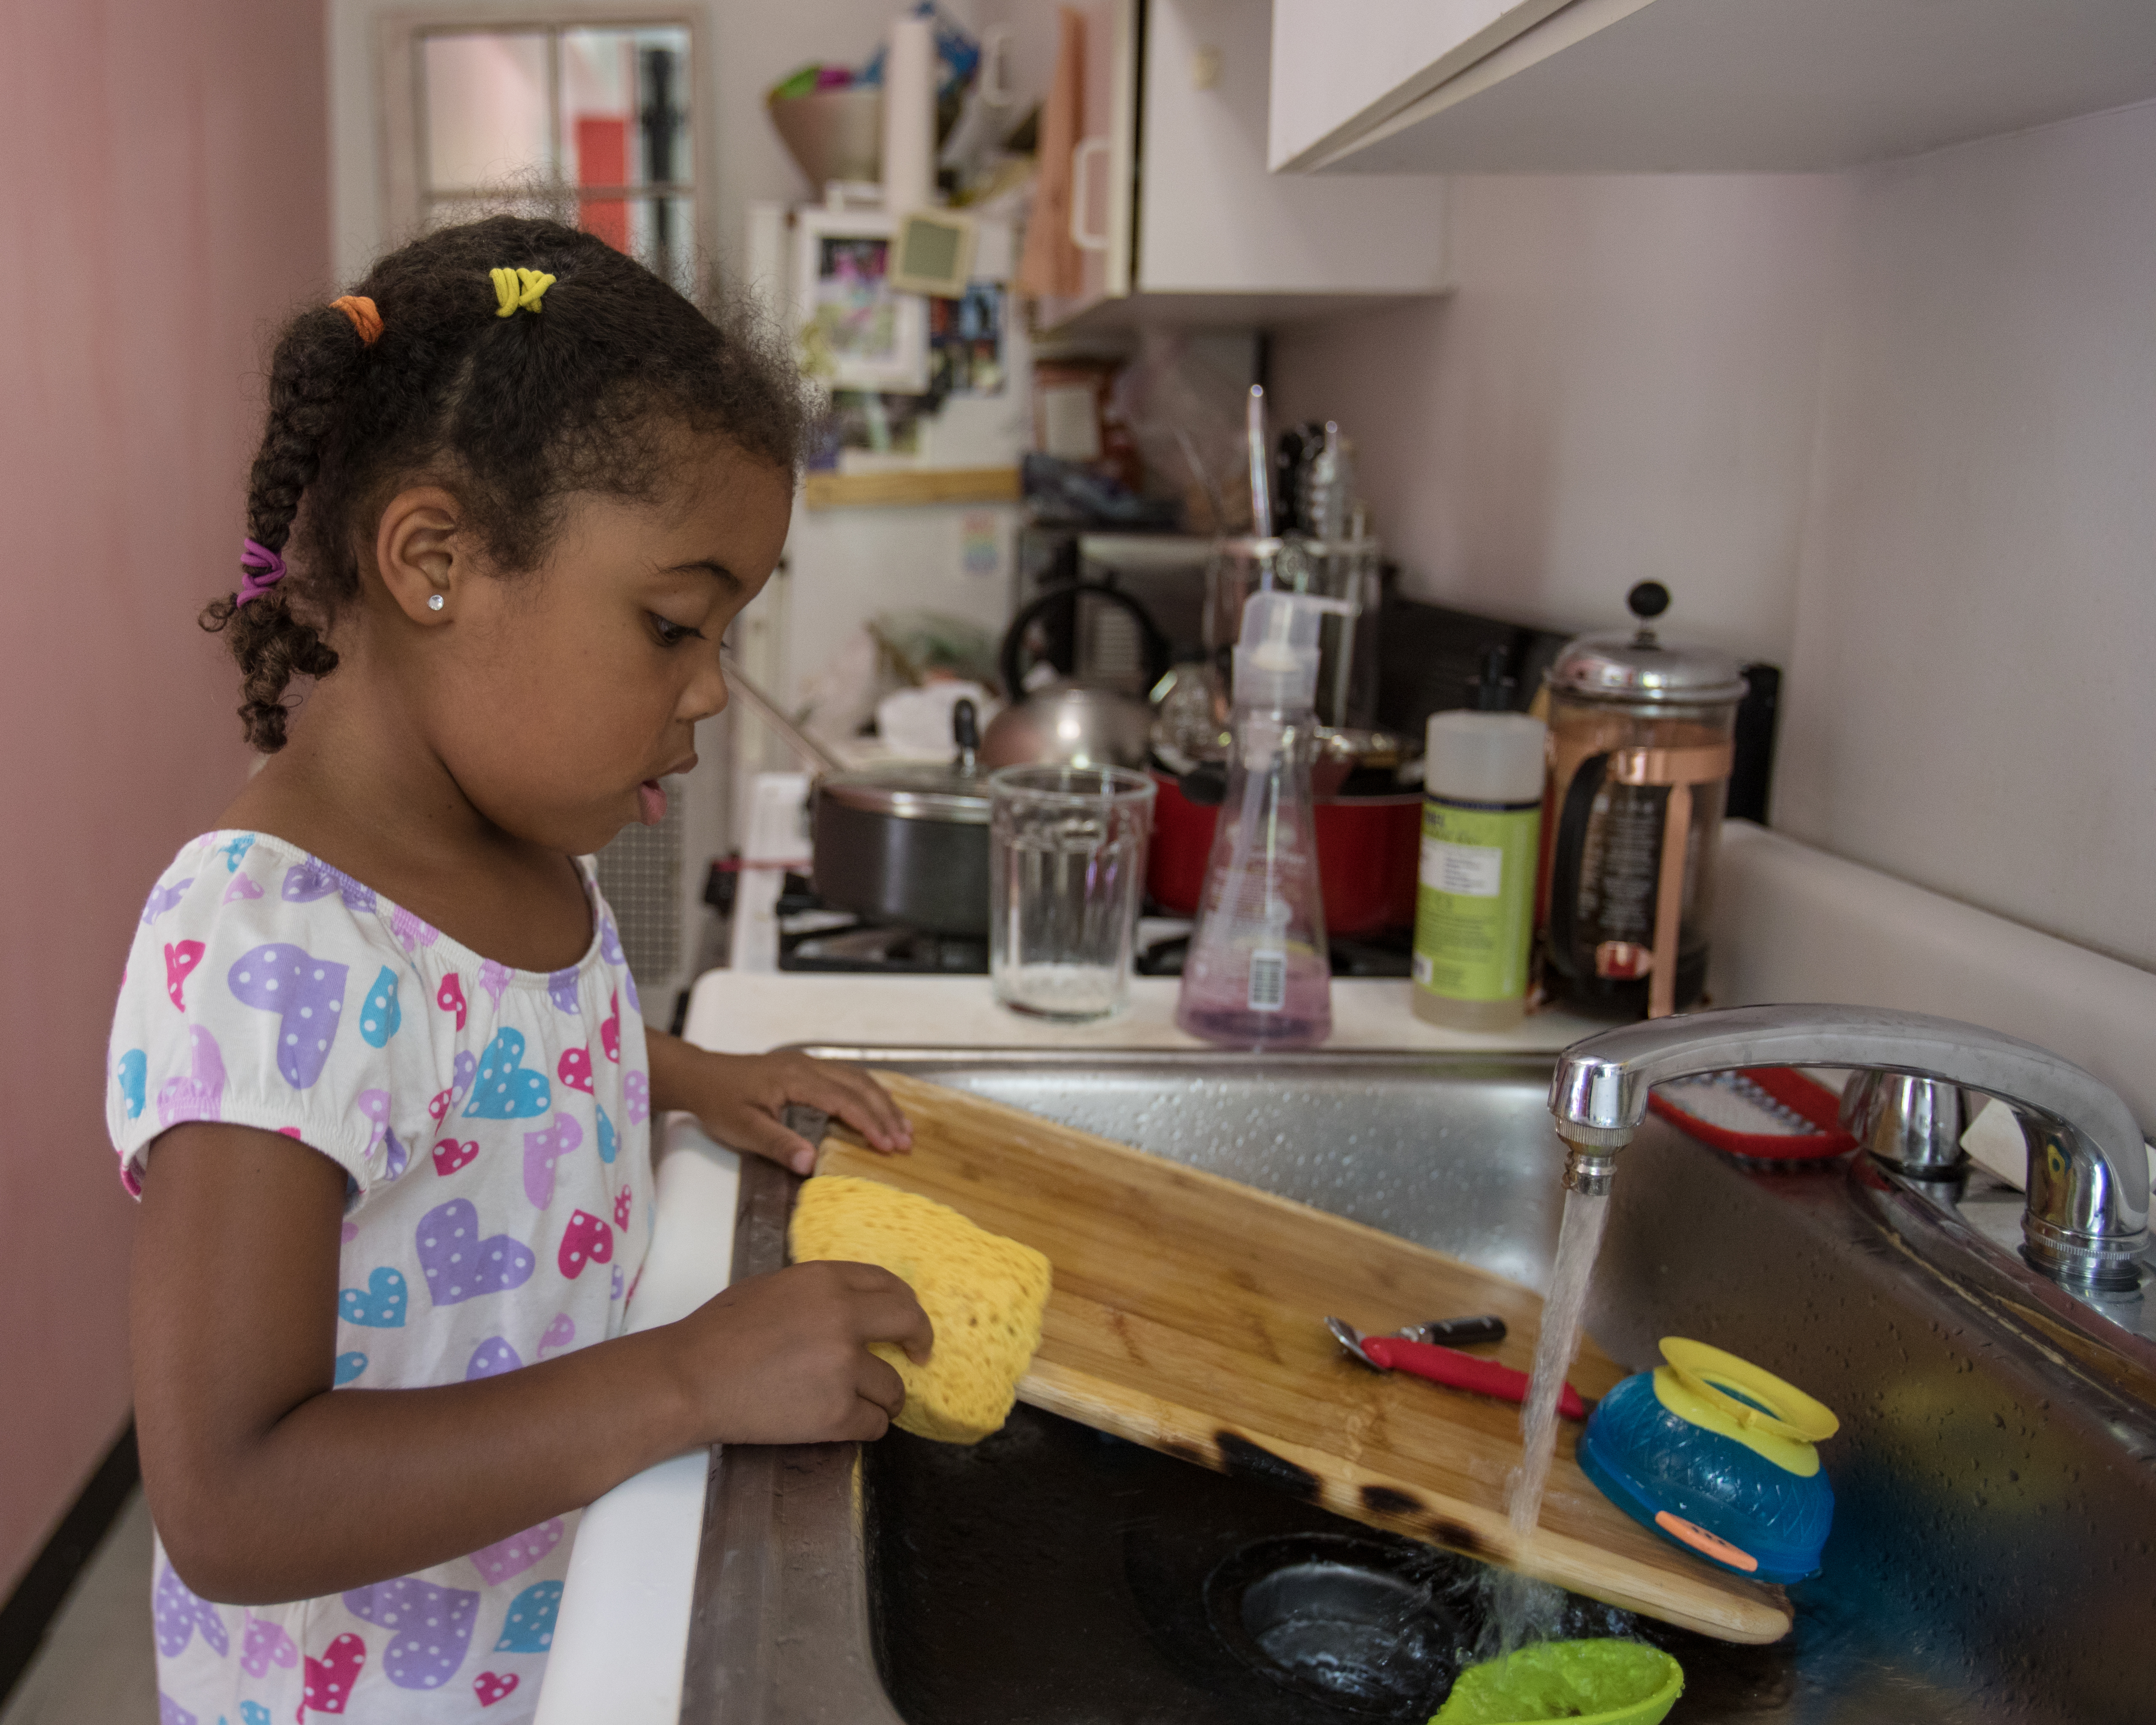 Une jeune fille lave la vaisselle dans une cuisine | Source : Getty Images